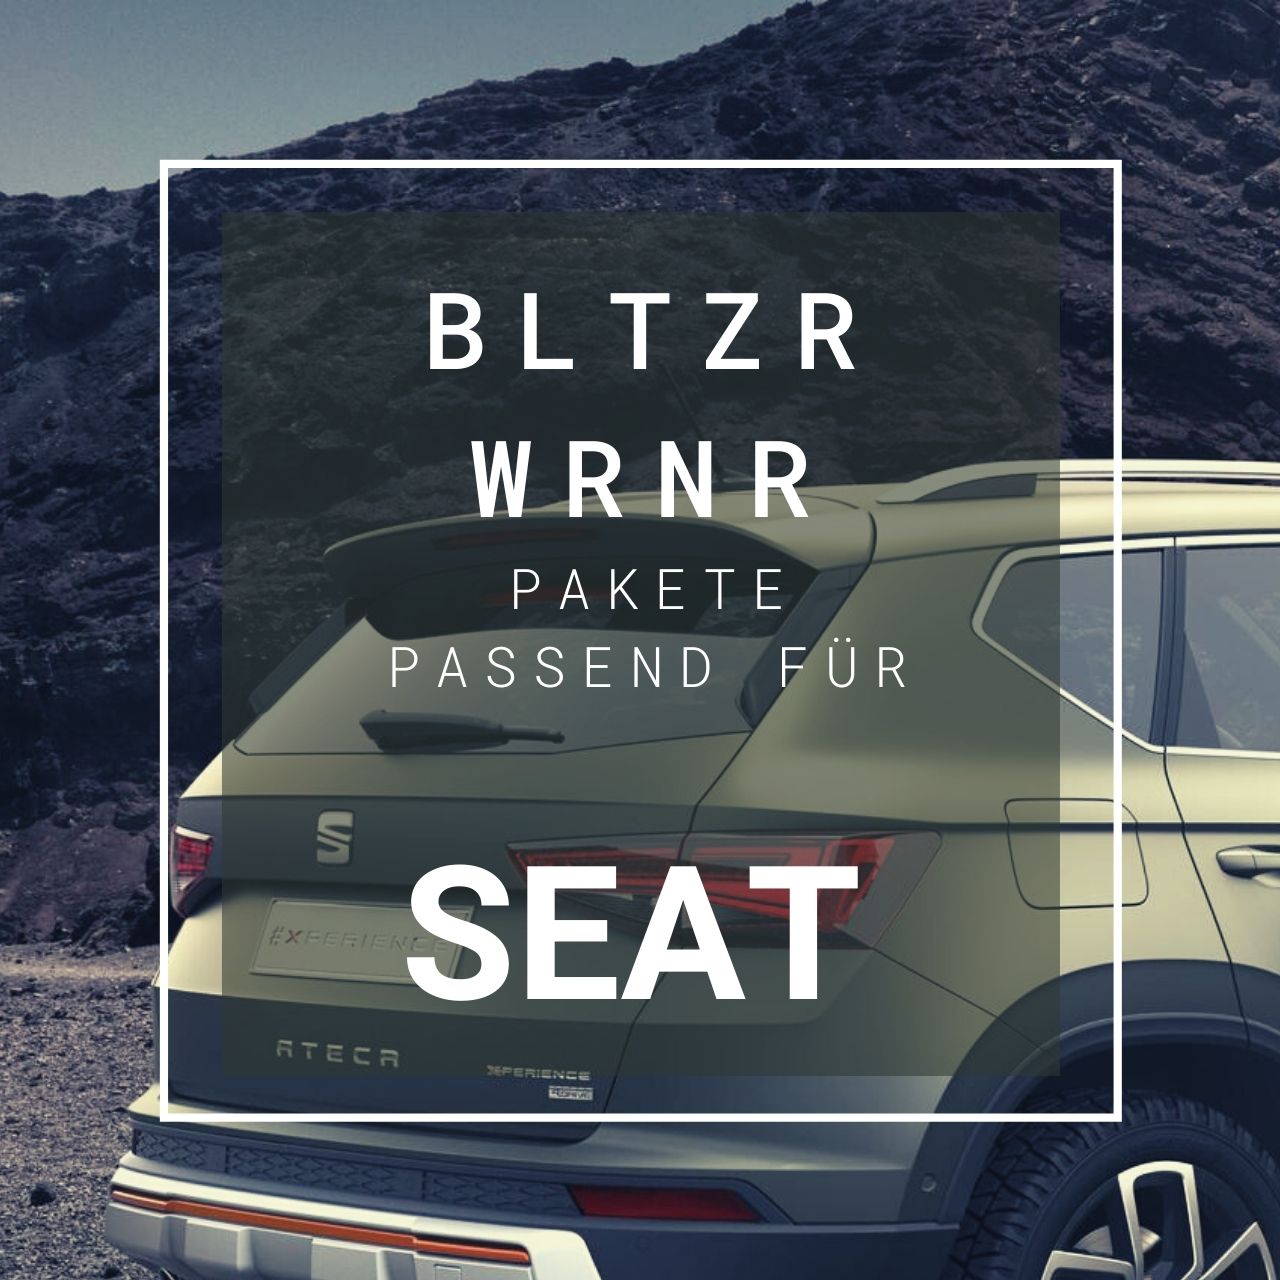 SEAT Blitzerwarner Pakete - BLTZR WRNR